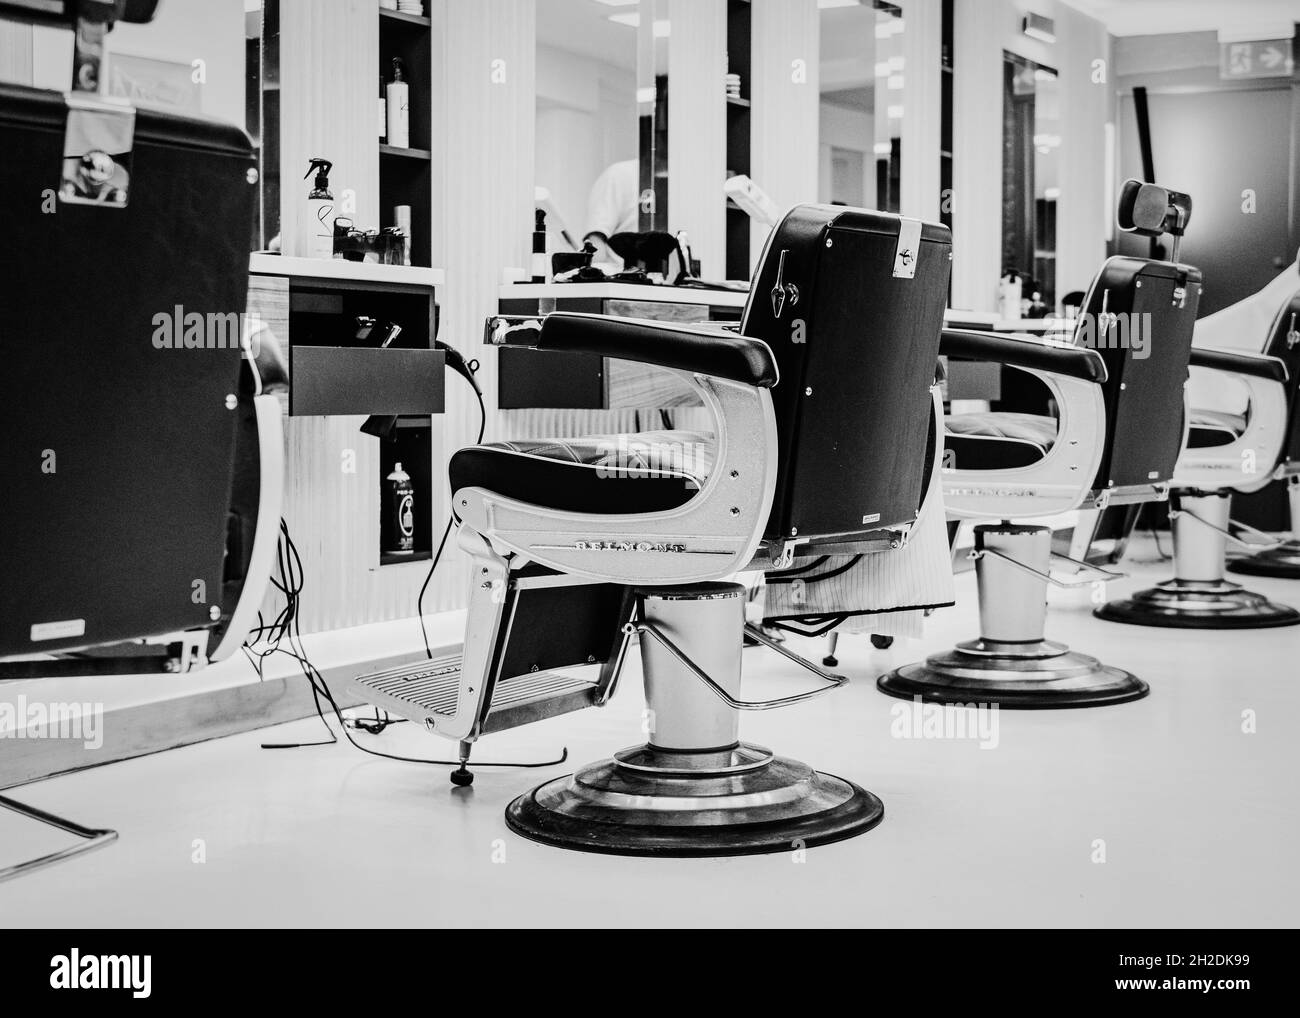 Célèbre chaise de bar Takara Belmont dans un salon de barbiers à St Albans, Hertfordshire, Angleterre. Banque D'Images